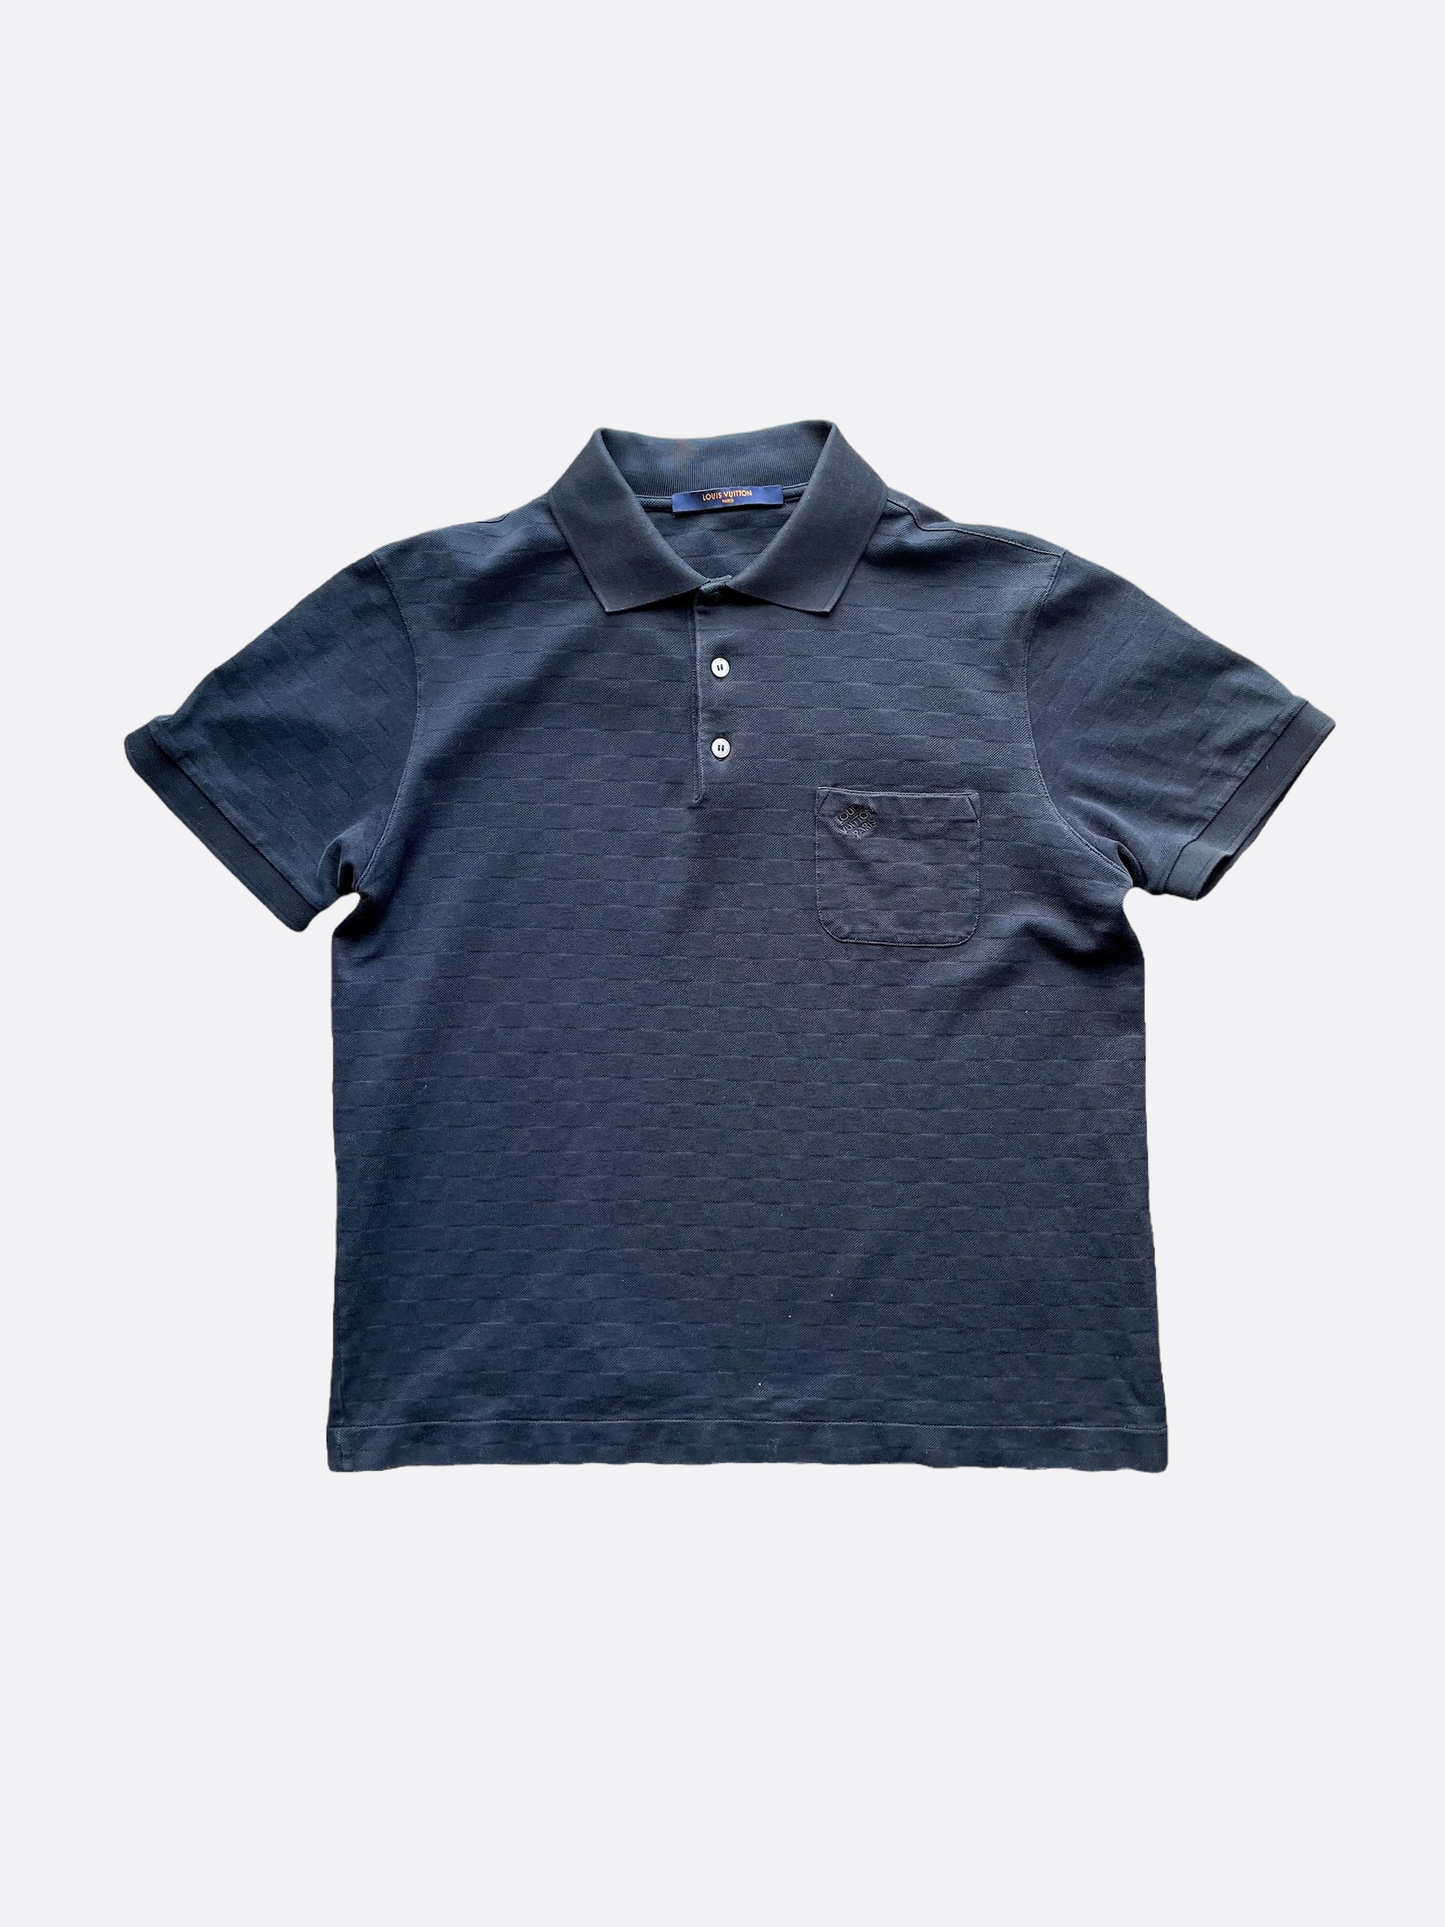 Louis Vuitton Damier Check Polo Shirt